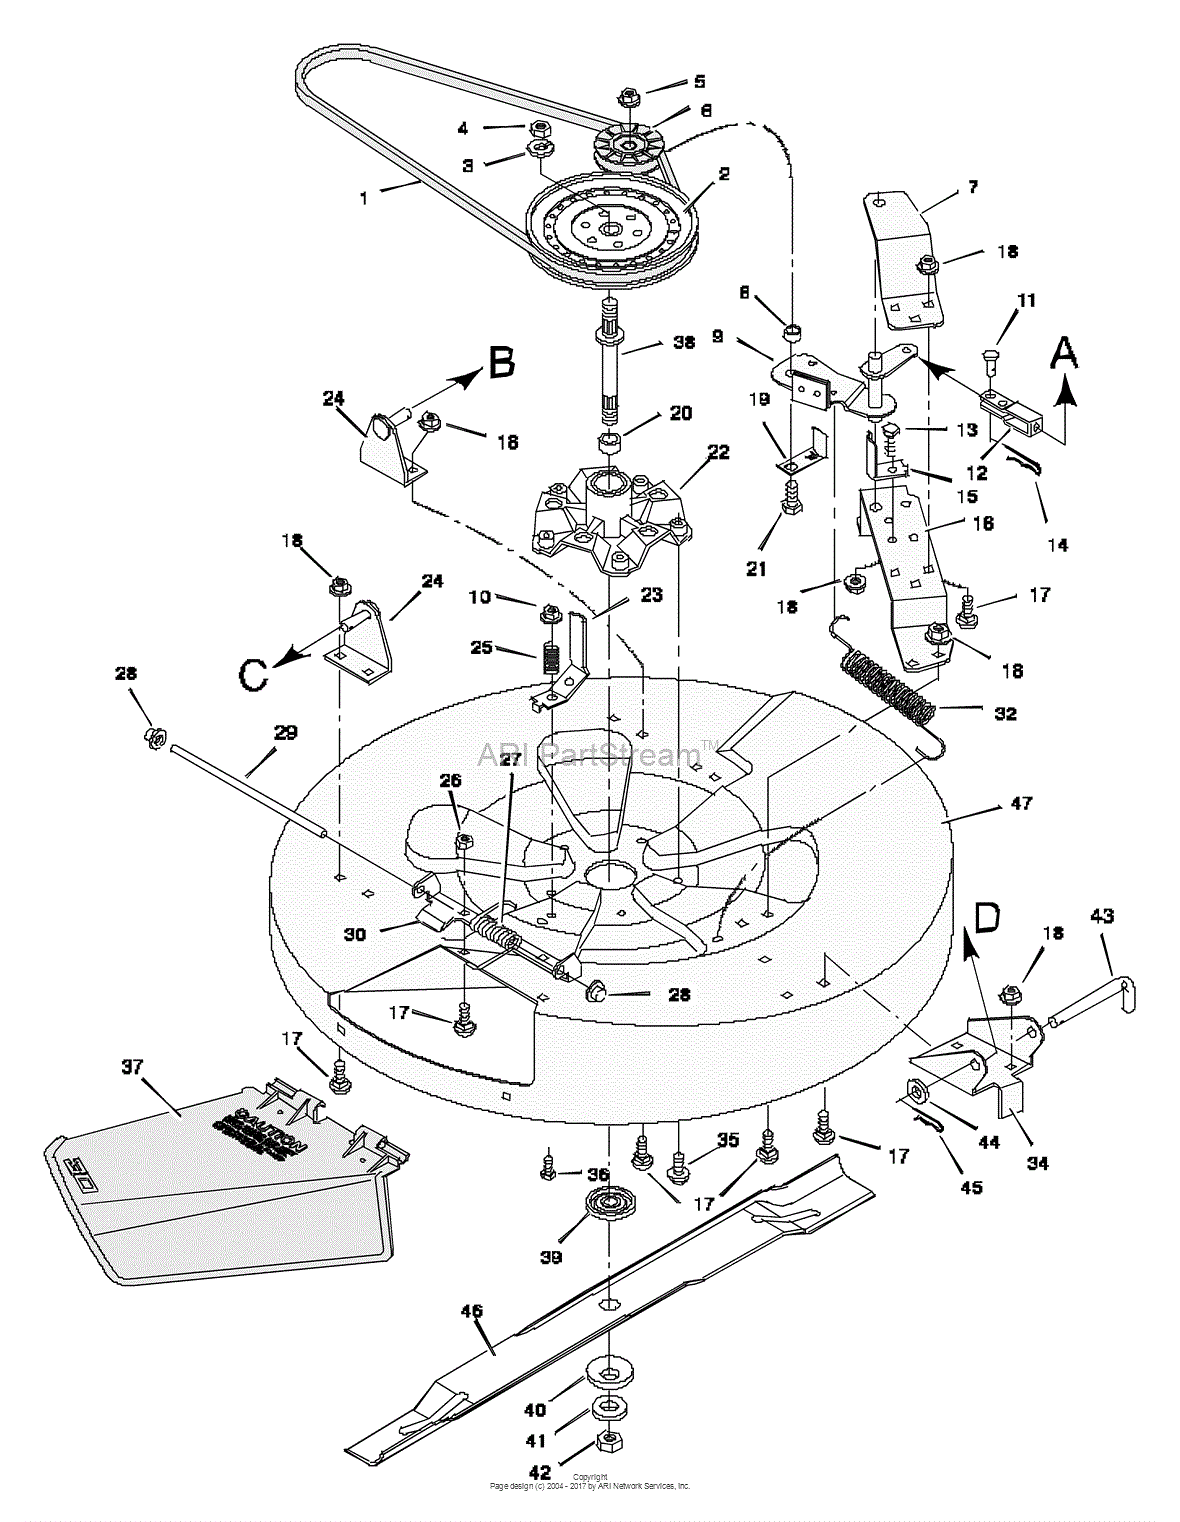 Murray lawn mower carburetor diagram